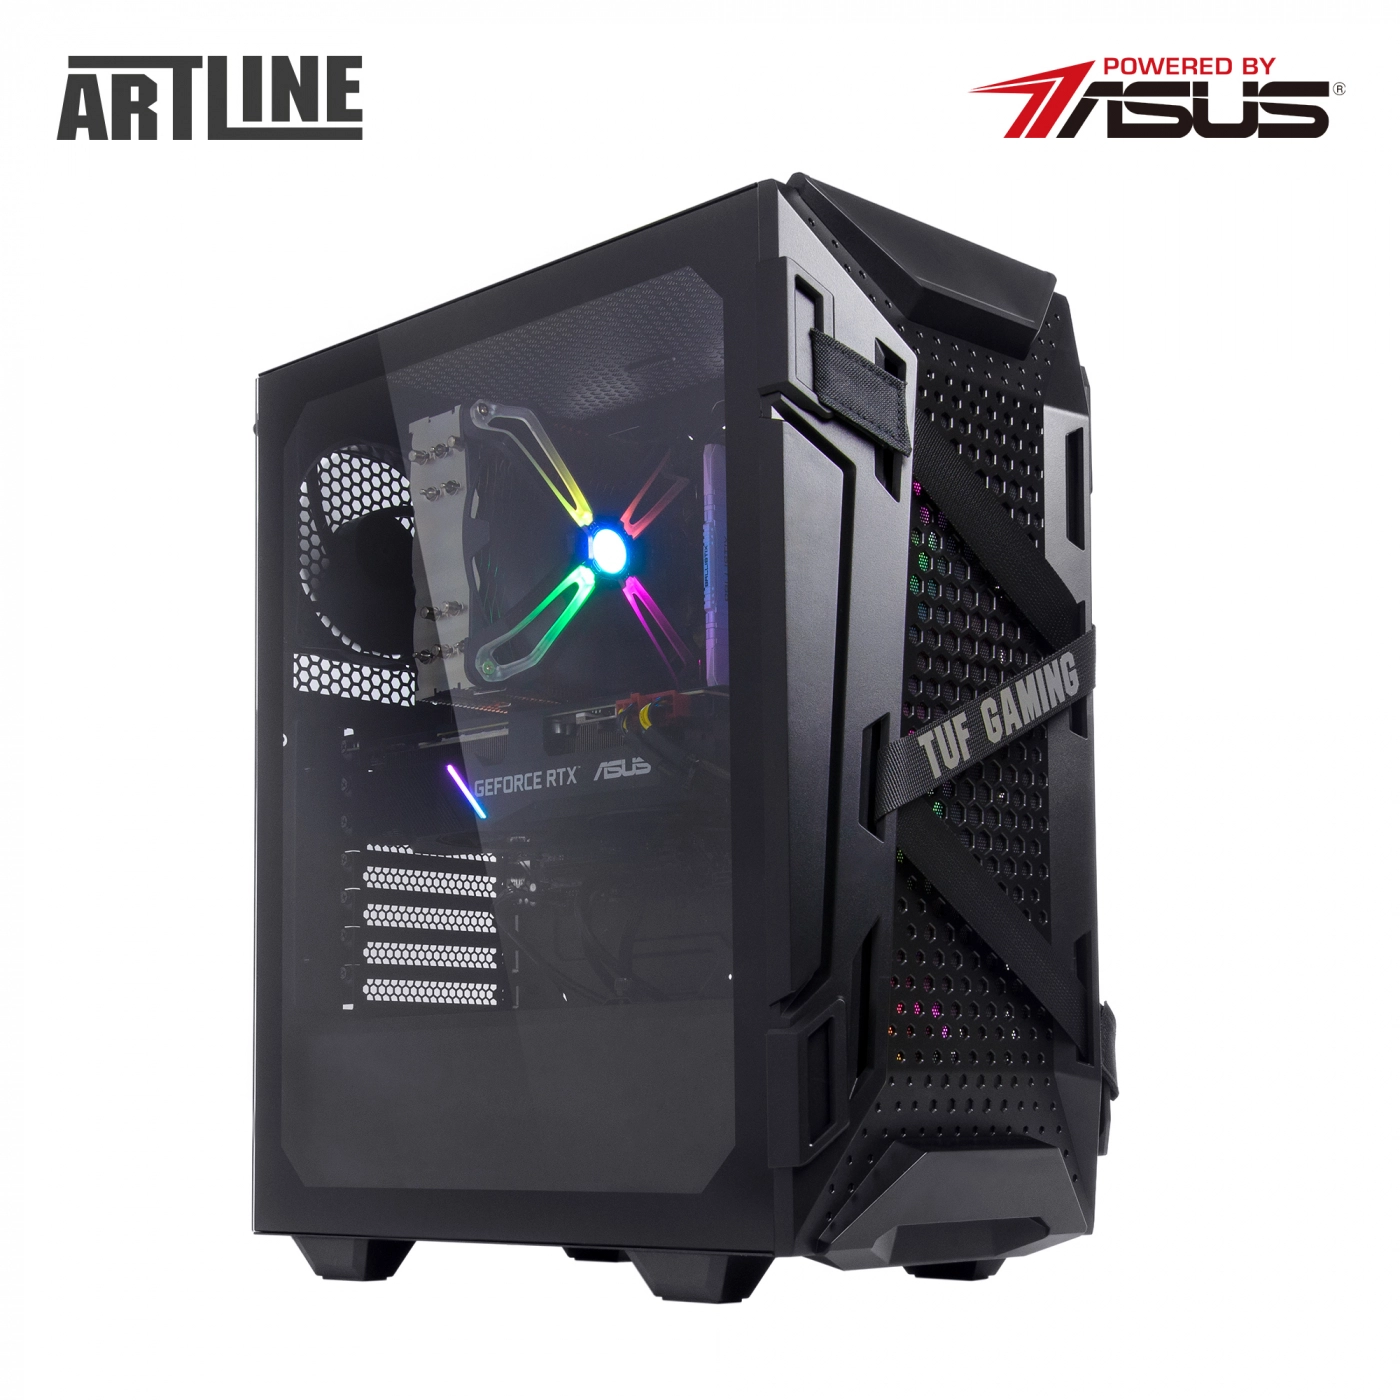 Купить Компьютер ARTLINE Gaming TUFv03 - фото 11